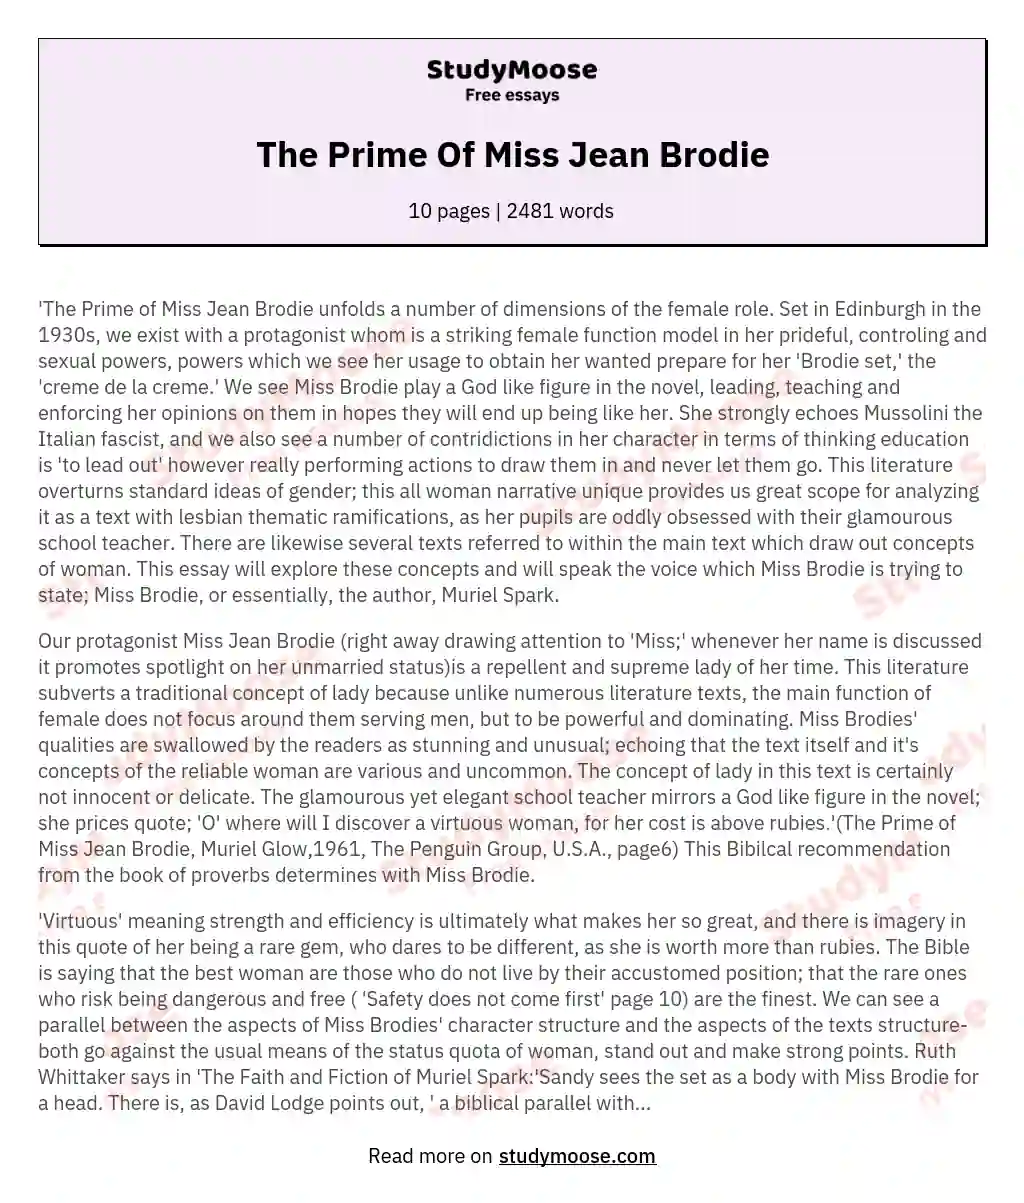 The Prime Of Miss Jean Brodie essay